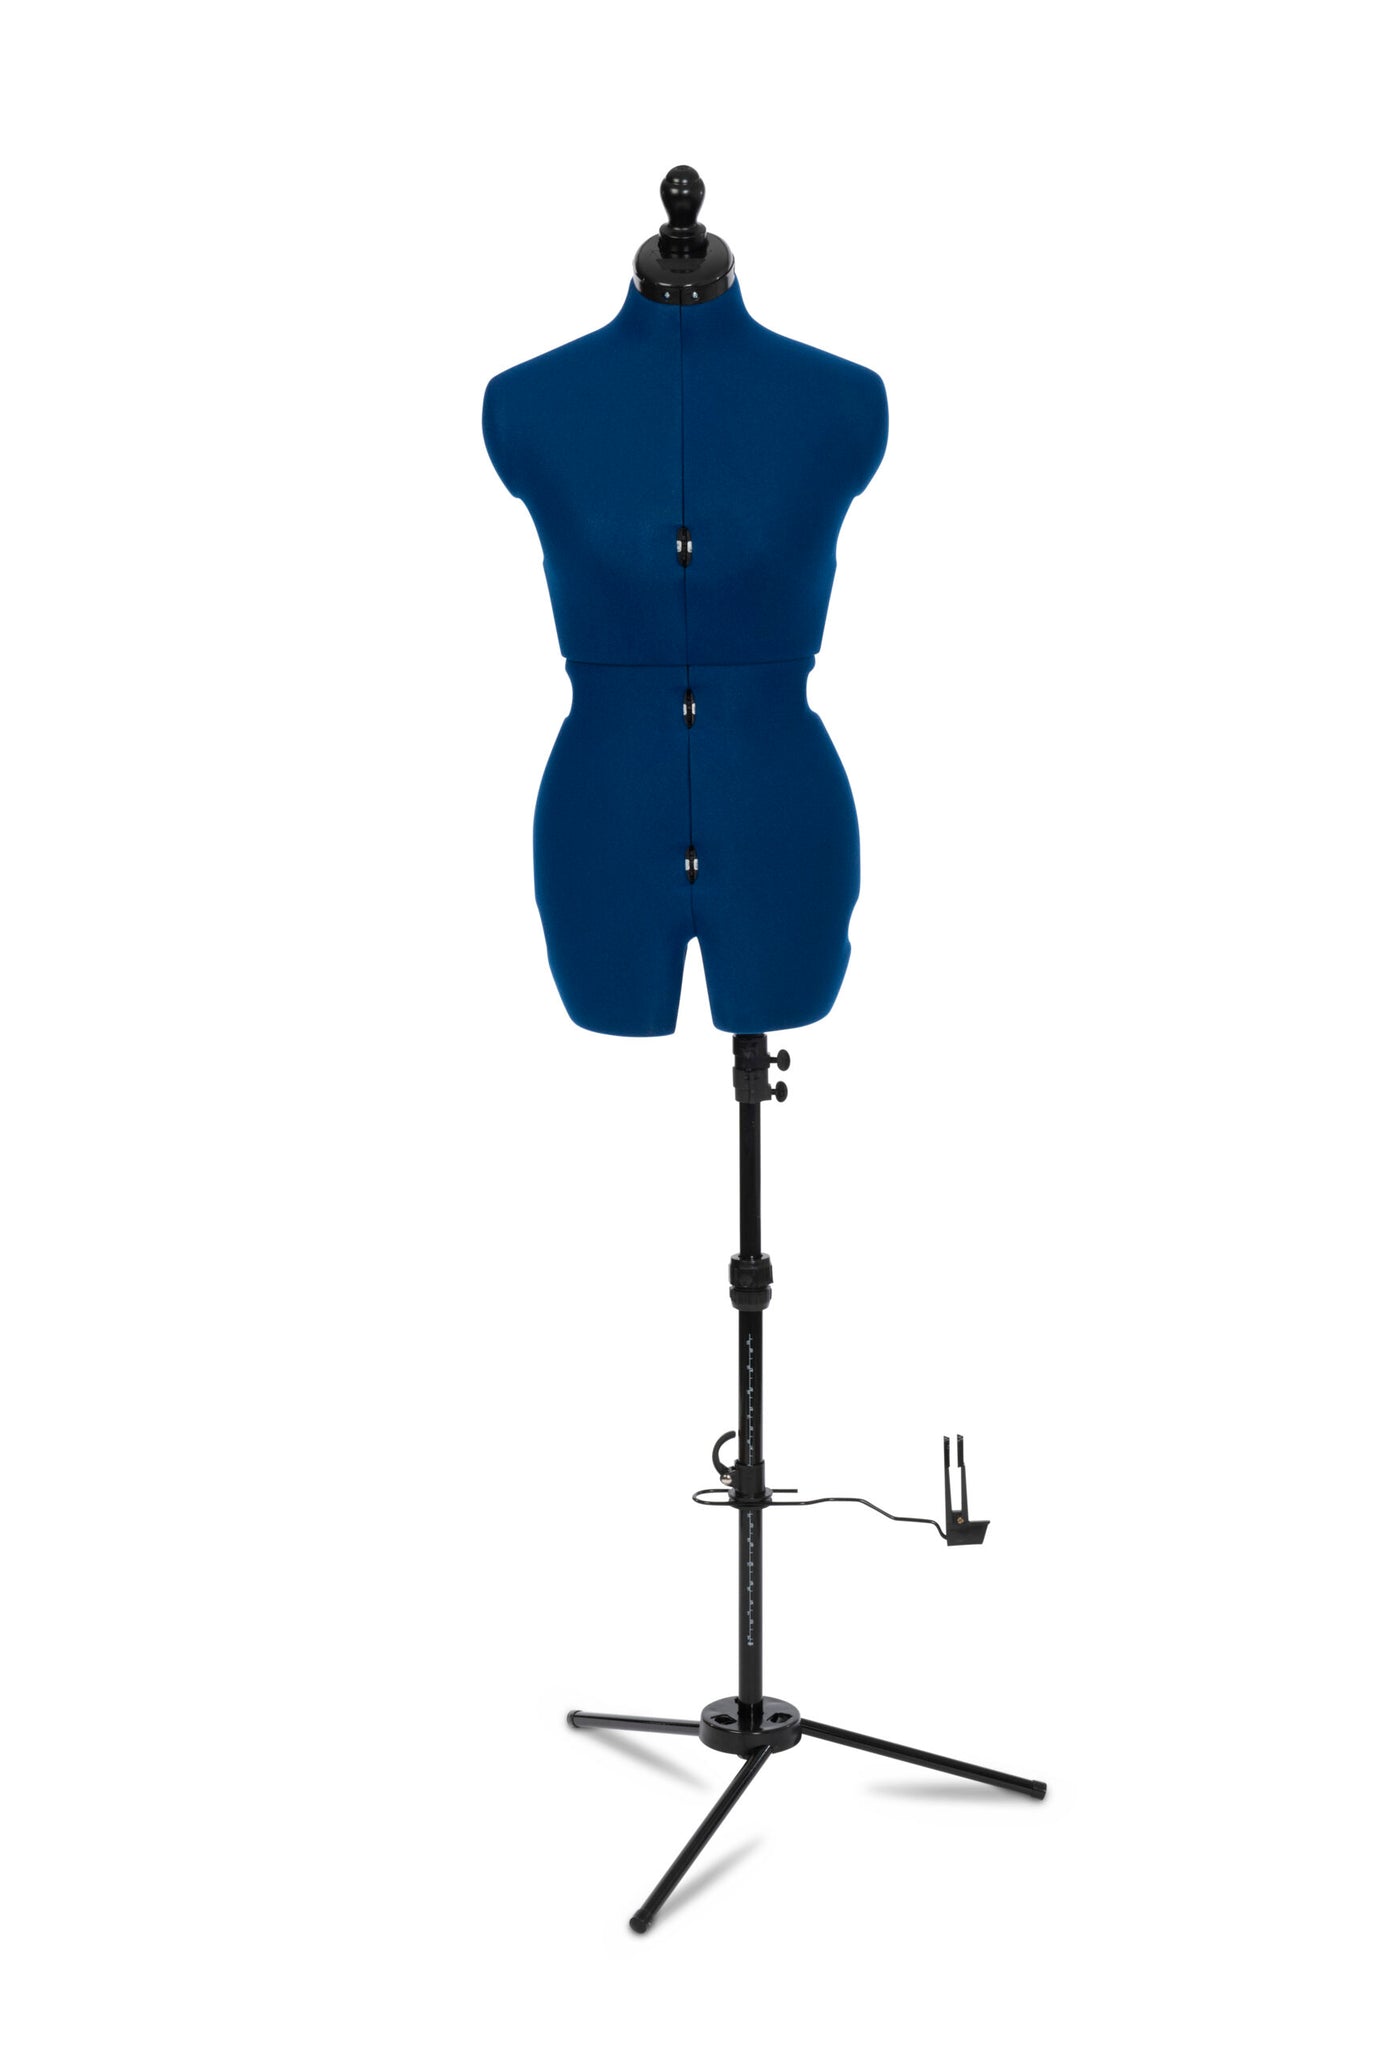 Sew Deluxe 8 Part Dressform Adjustable Dressmakers Mannequin